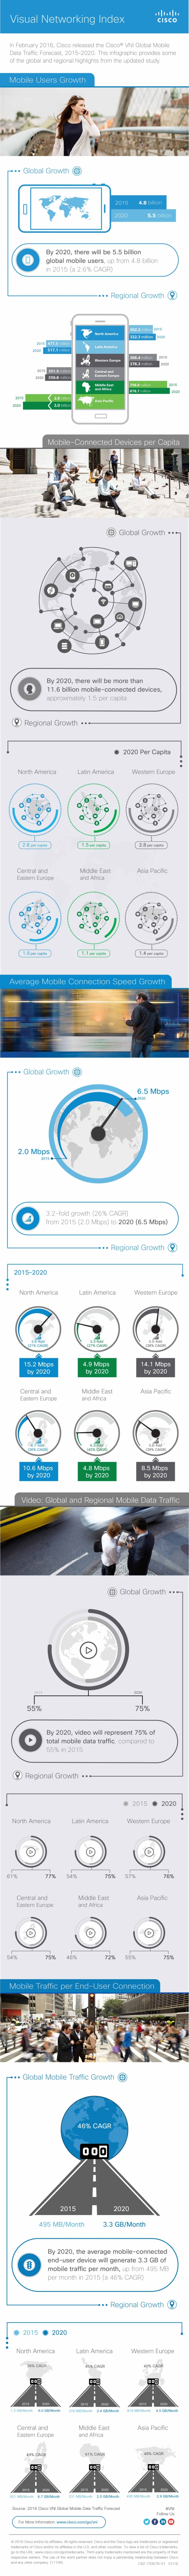 Cisco: 8-krotny wzrost globalnego ruchu w sieciach mobilnych